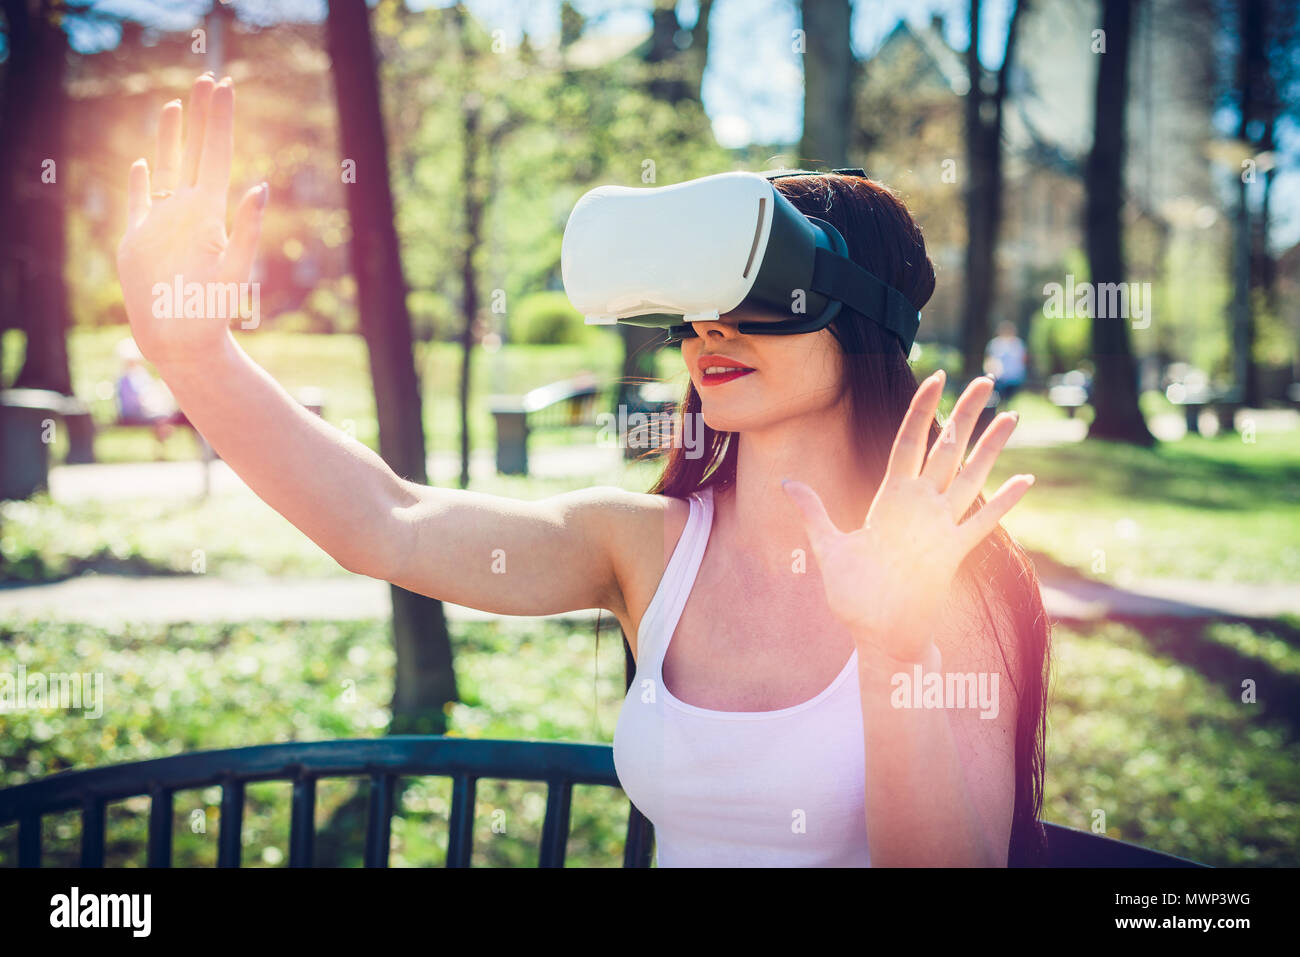 virtual reality fun